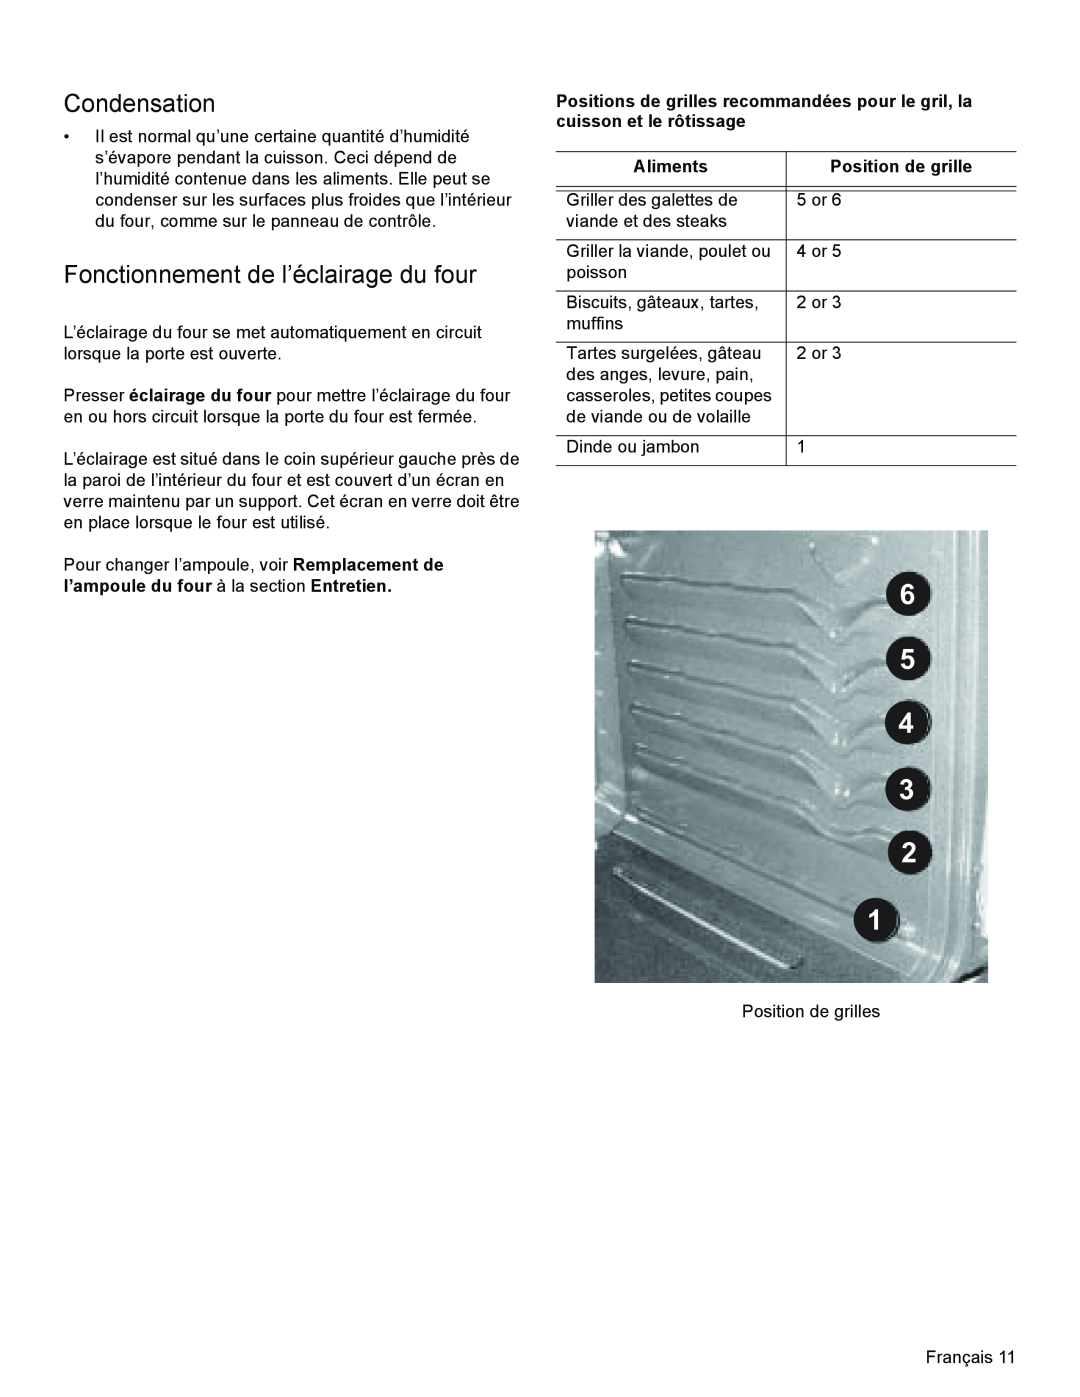 Bosch Appliances HGS3053UC Fonctionnement de l’éclairage du four, 6 5 4 3 2, Condensation, Aliments, Position de grille 